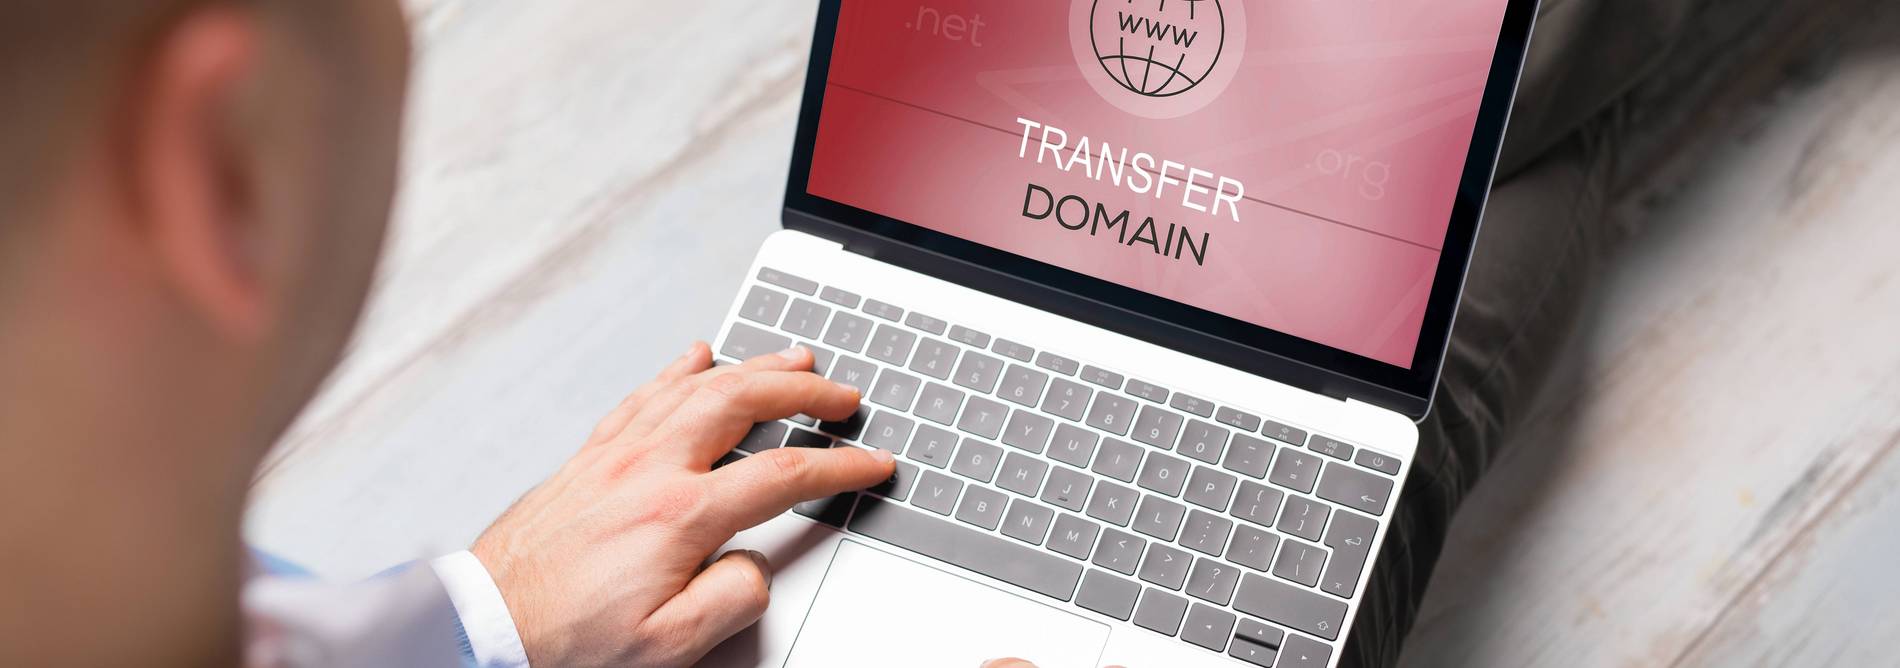 Mann will Domain-Name für seine Website an Notebook transferieren